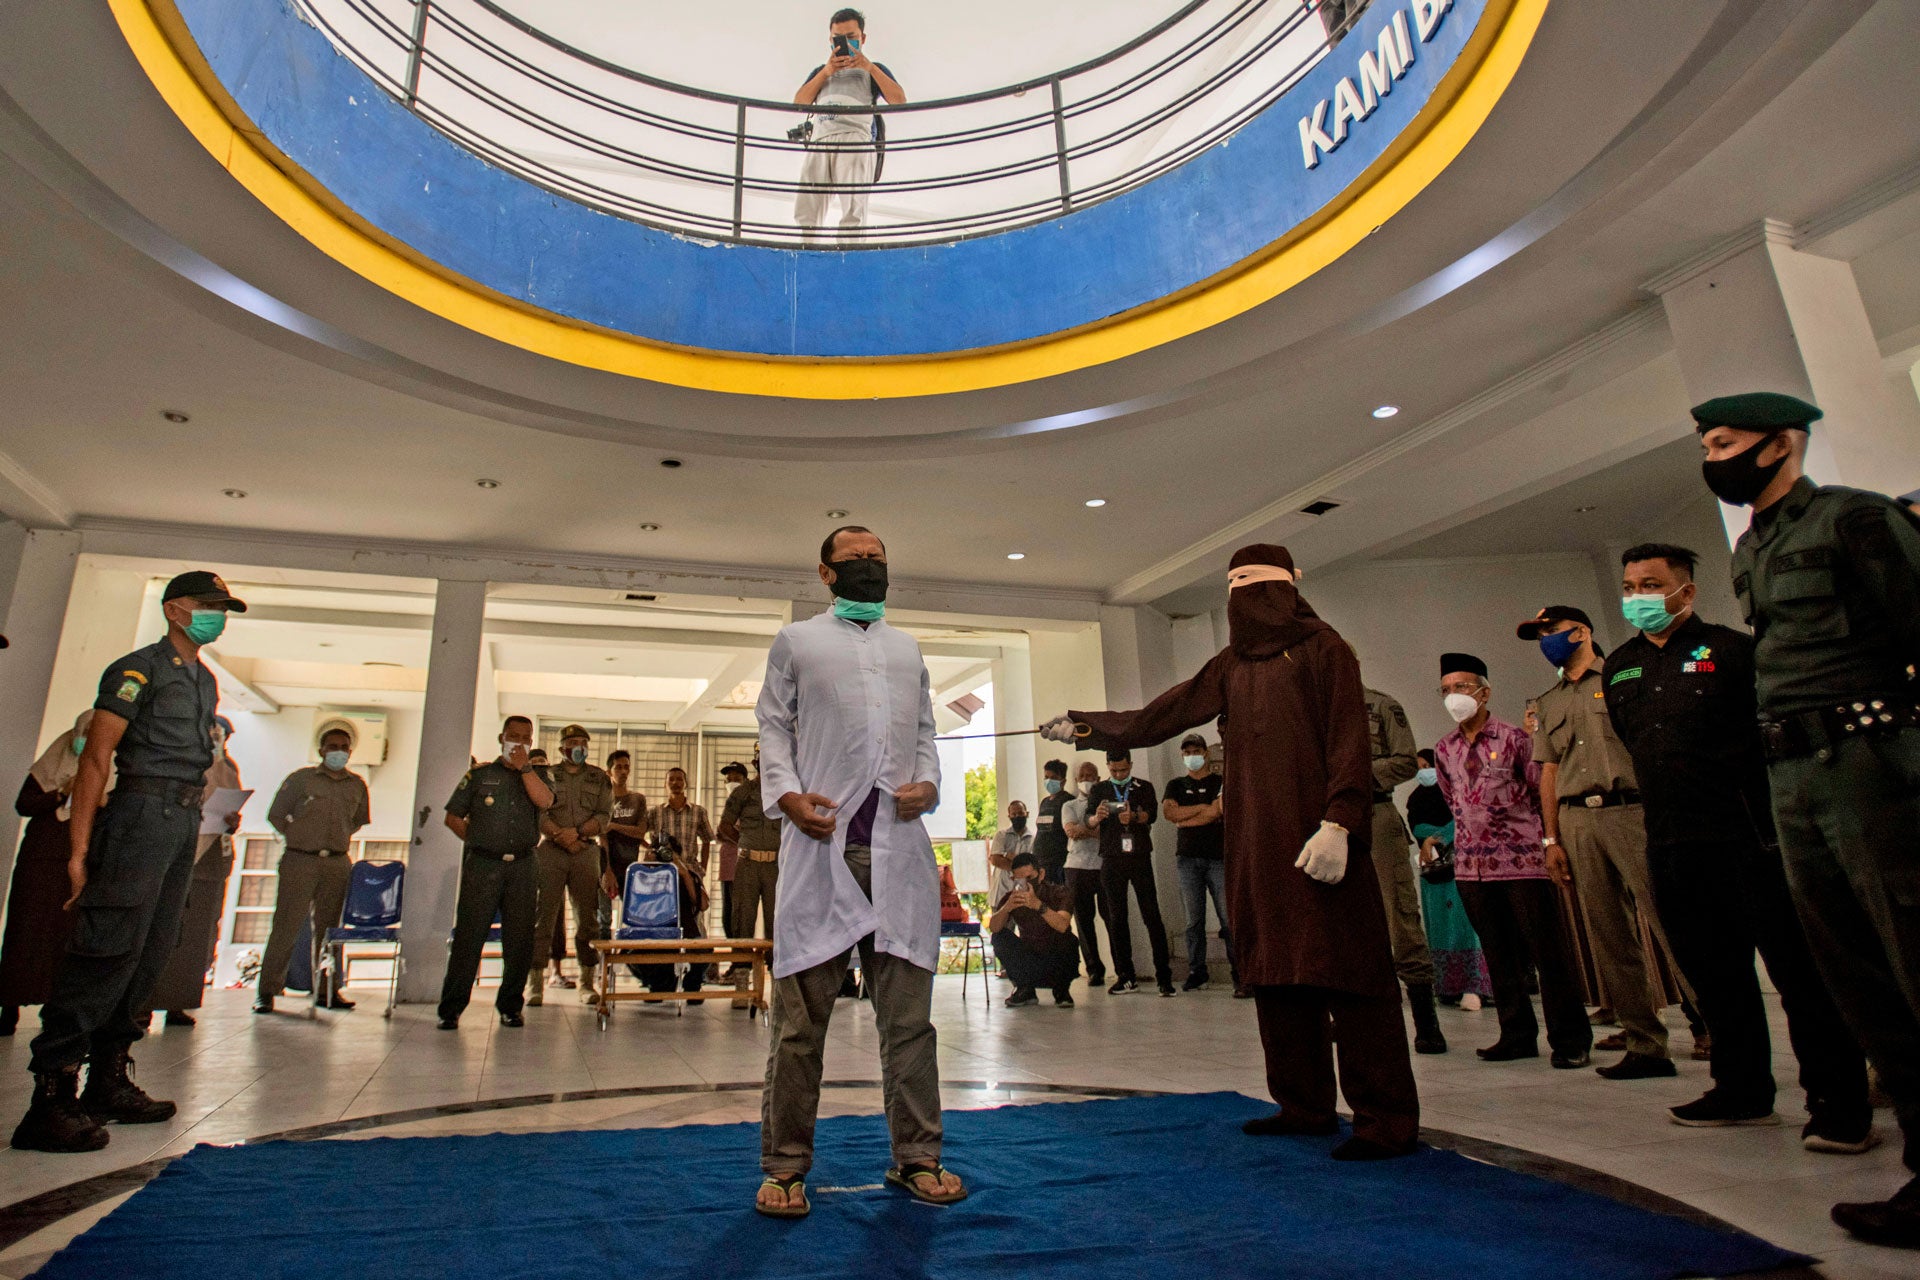 Un responsable de l’application de la charia à Banda Aceh, dans la province d'Aceh en Indonésie, frappe un homme accusé de rapports homosexuels à coups de canne en rotin lors d’une flagellation publique, le 28 janvier 2021. L’homme subissant la flagellation, ainsi qu’un deuxième homme, ont chacun été condamnés à 77 coups de bâton.